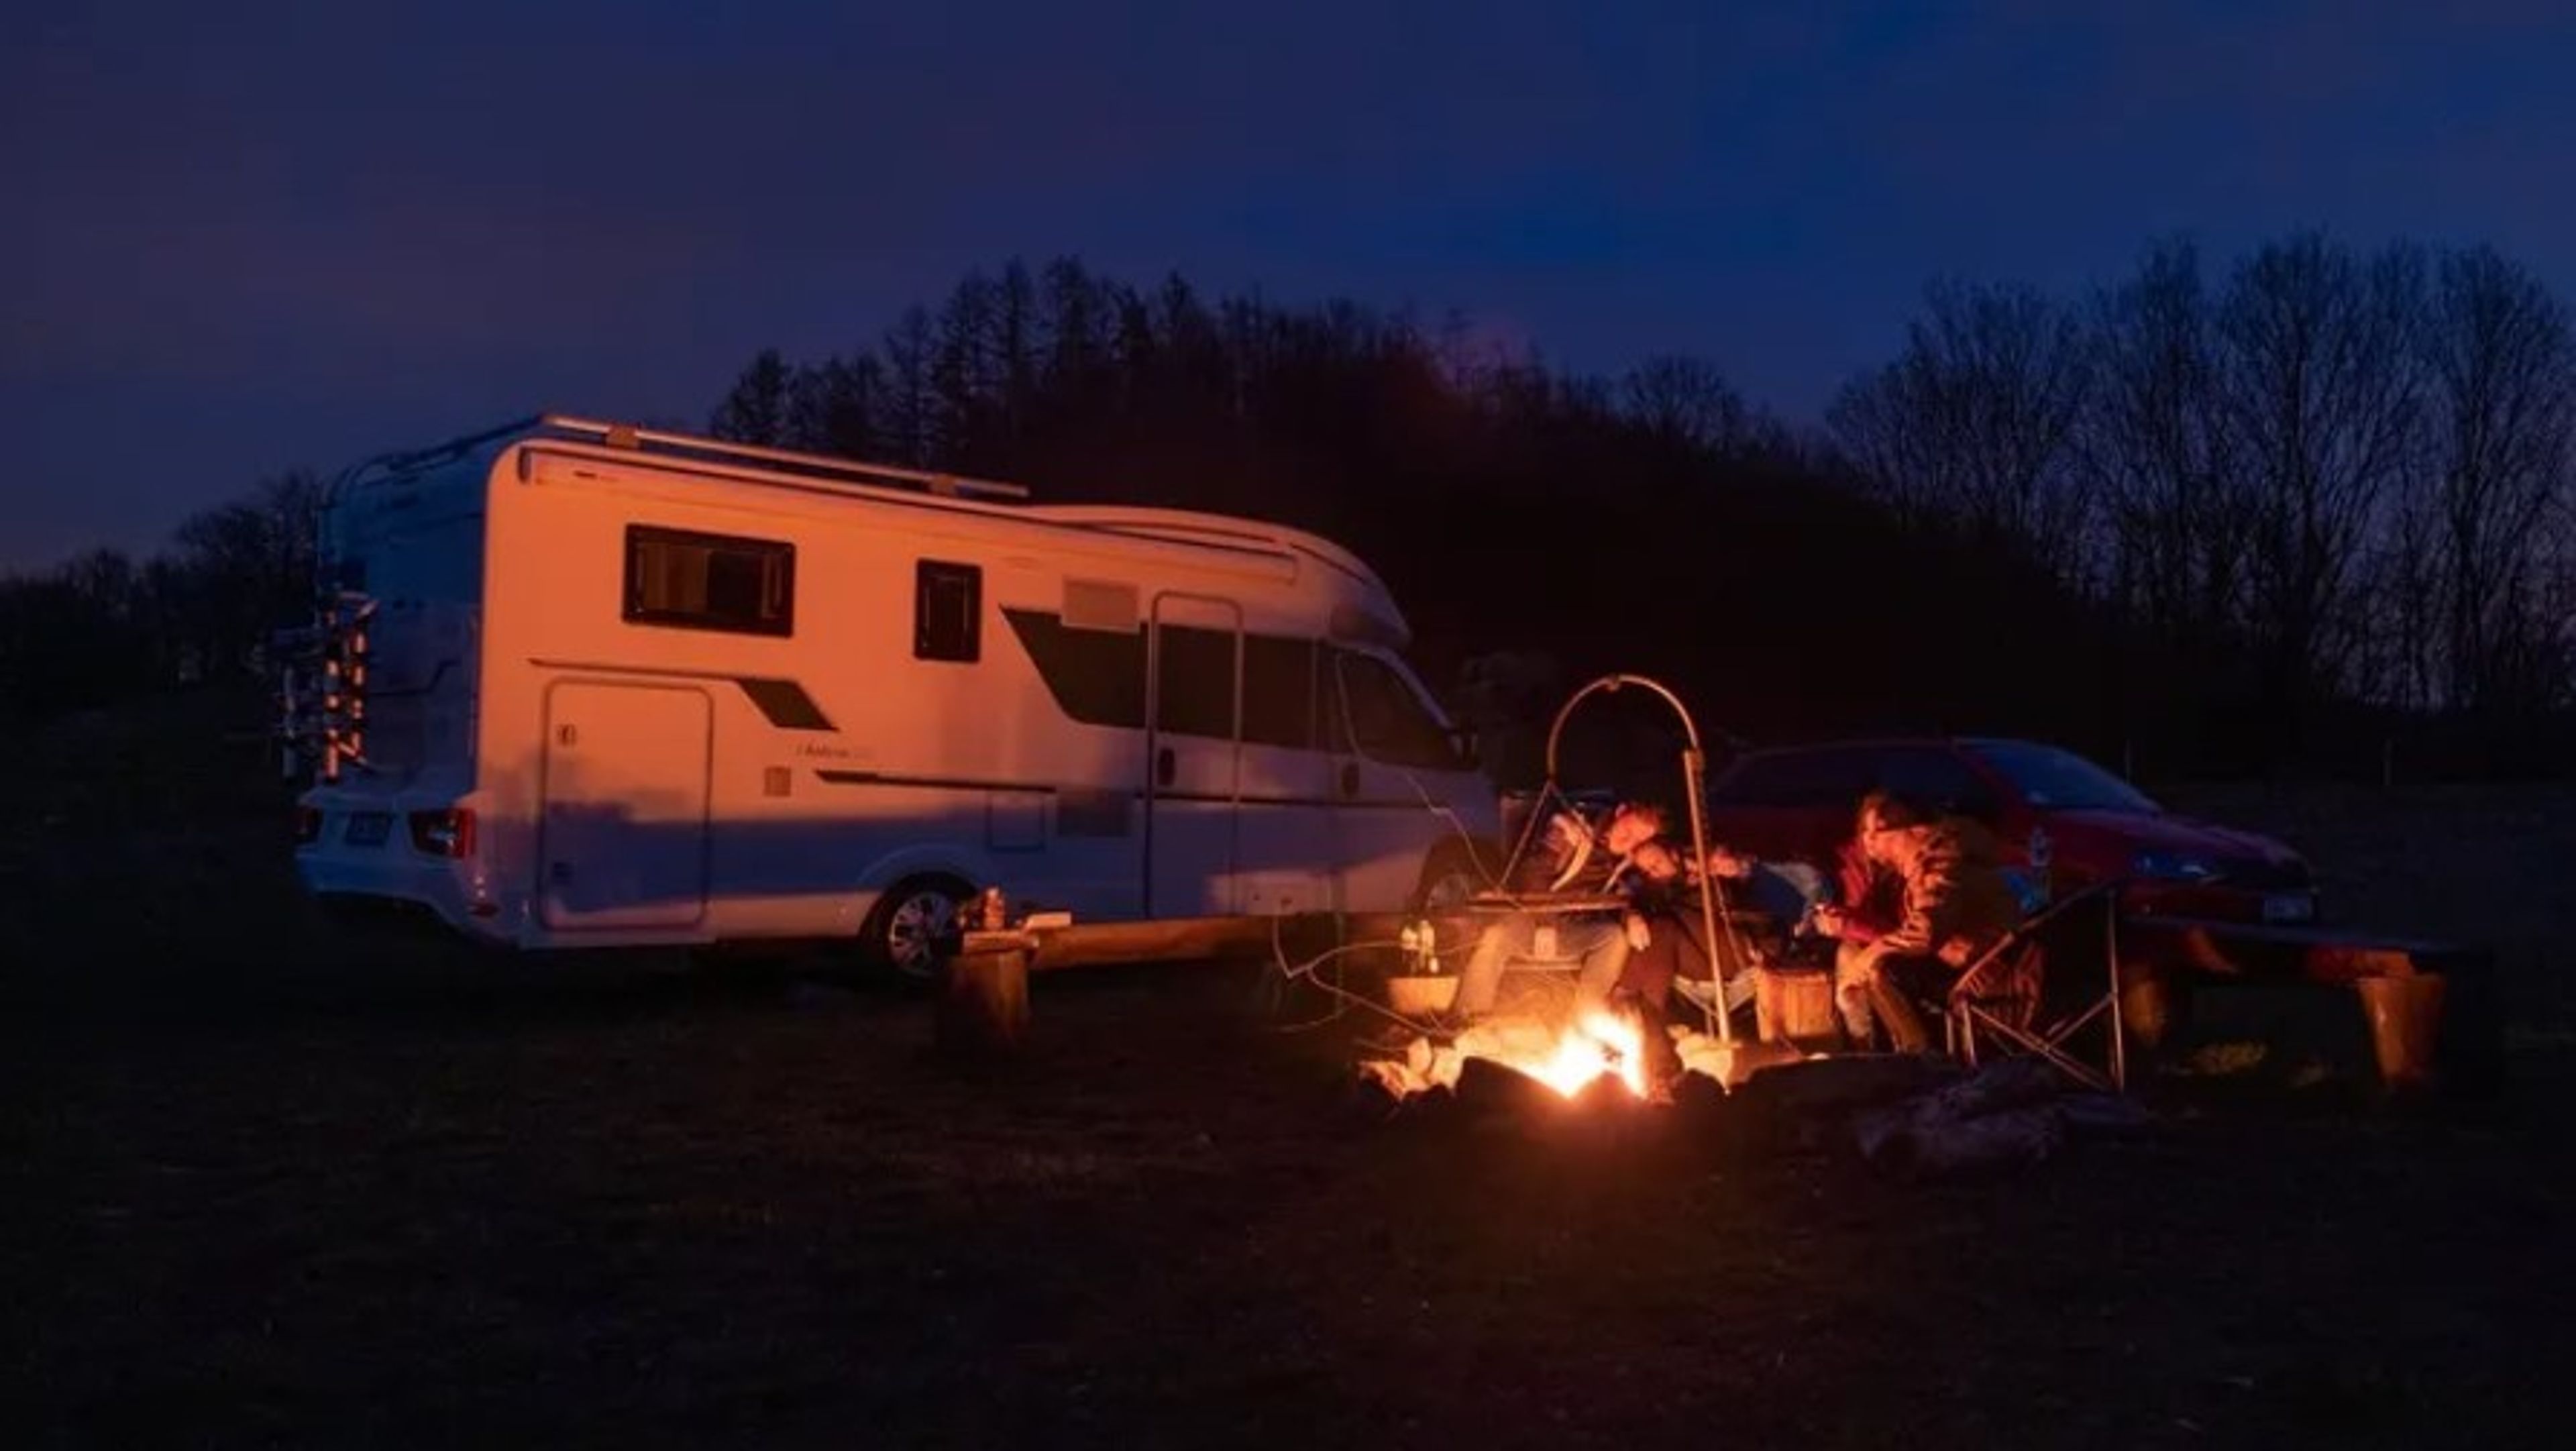 Eco campsite at night